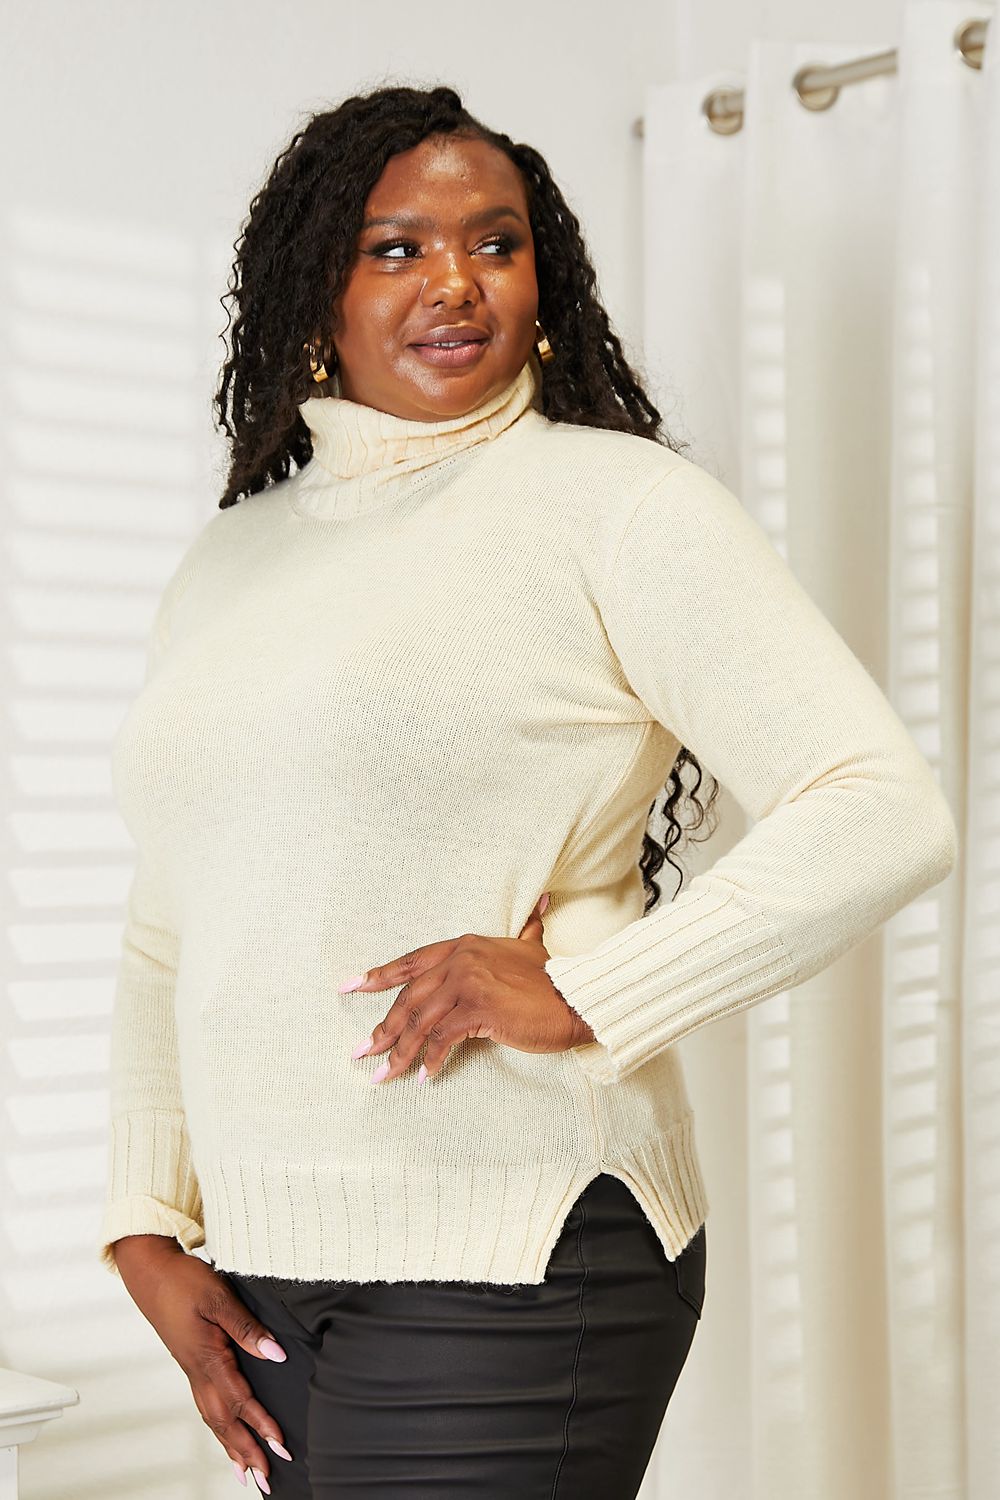 Heimish Full Size Long Sleeve Turtleneck Sweater with Side Slit - TiffanyzKlozet